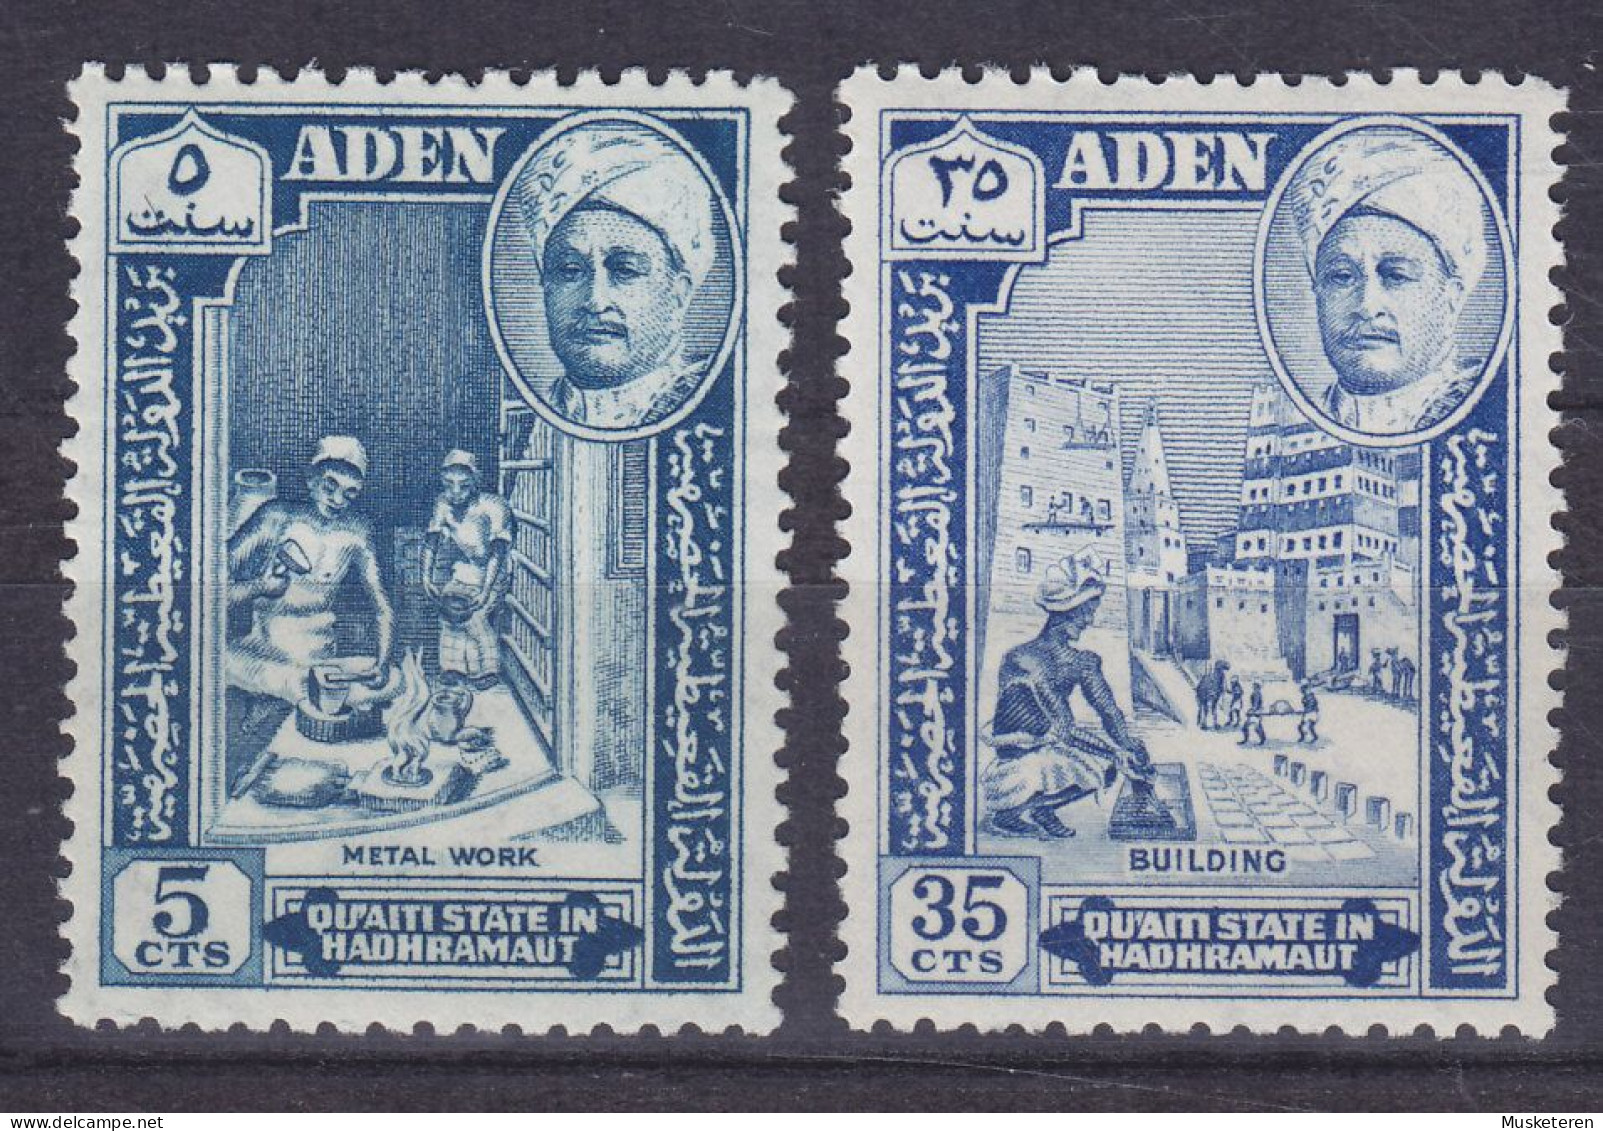 Aden Qu'aiti State In Hadhramaut 1955 Mi. 29, 33 Sultan, Metalarbeiter & Maurer, MNH** - Aden (1854-1963)